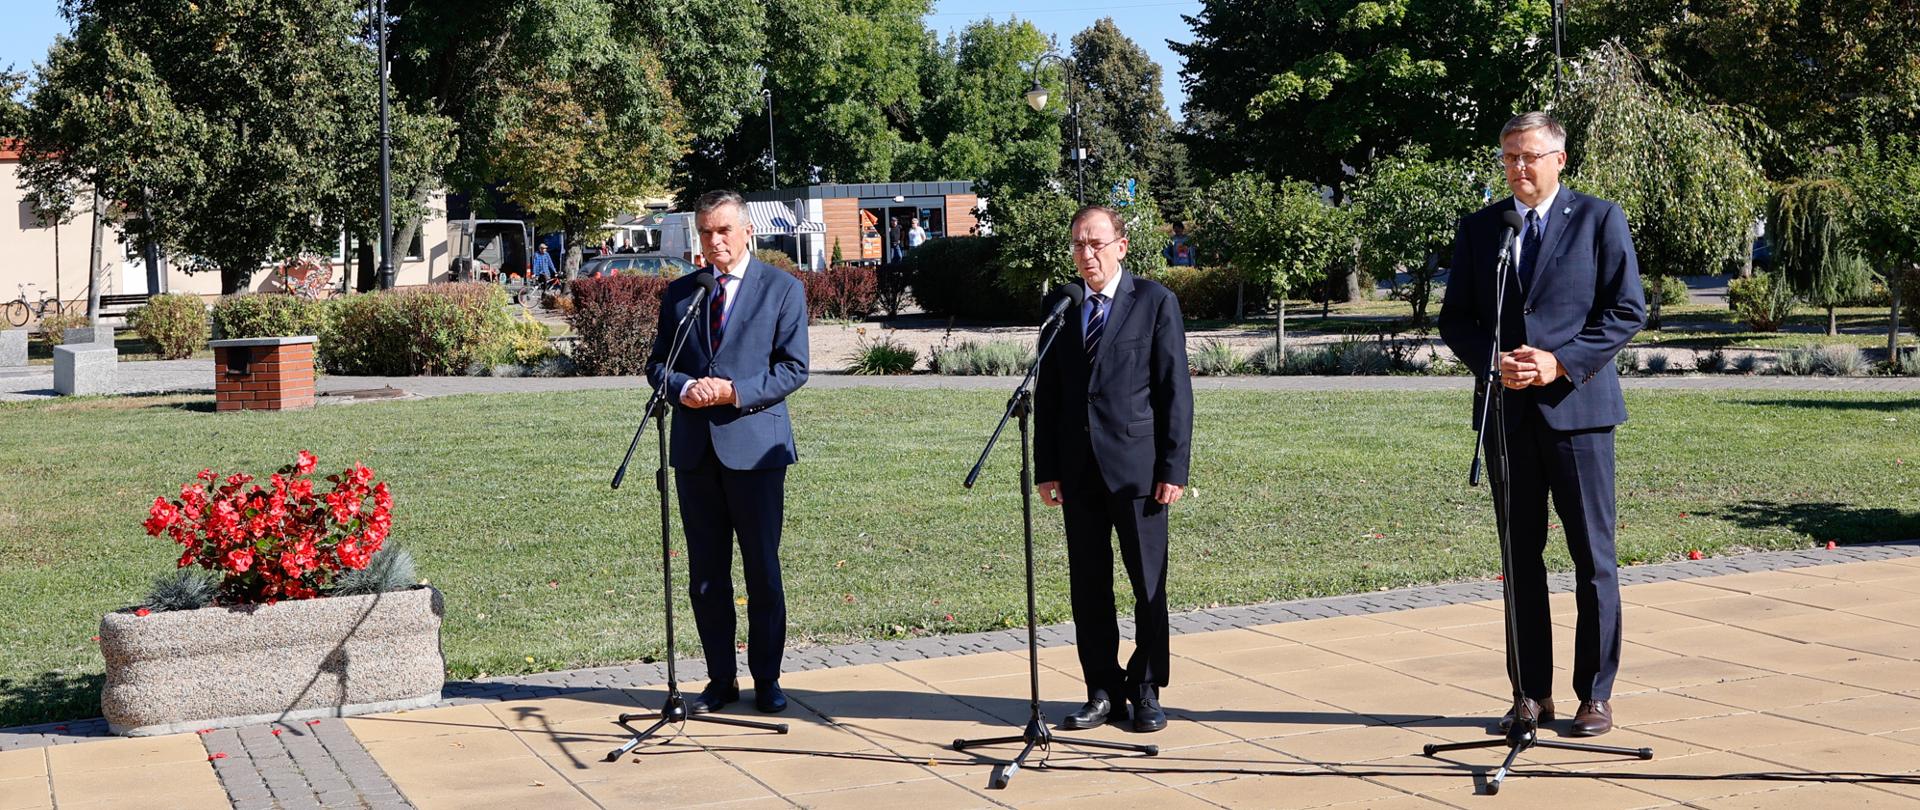 Trzech mężczyzn w garniturach stoi przy mikrofonach.